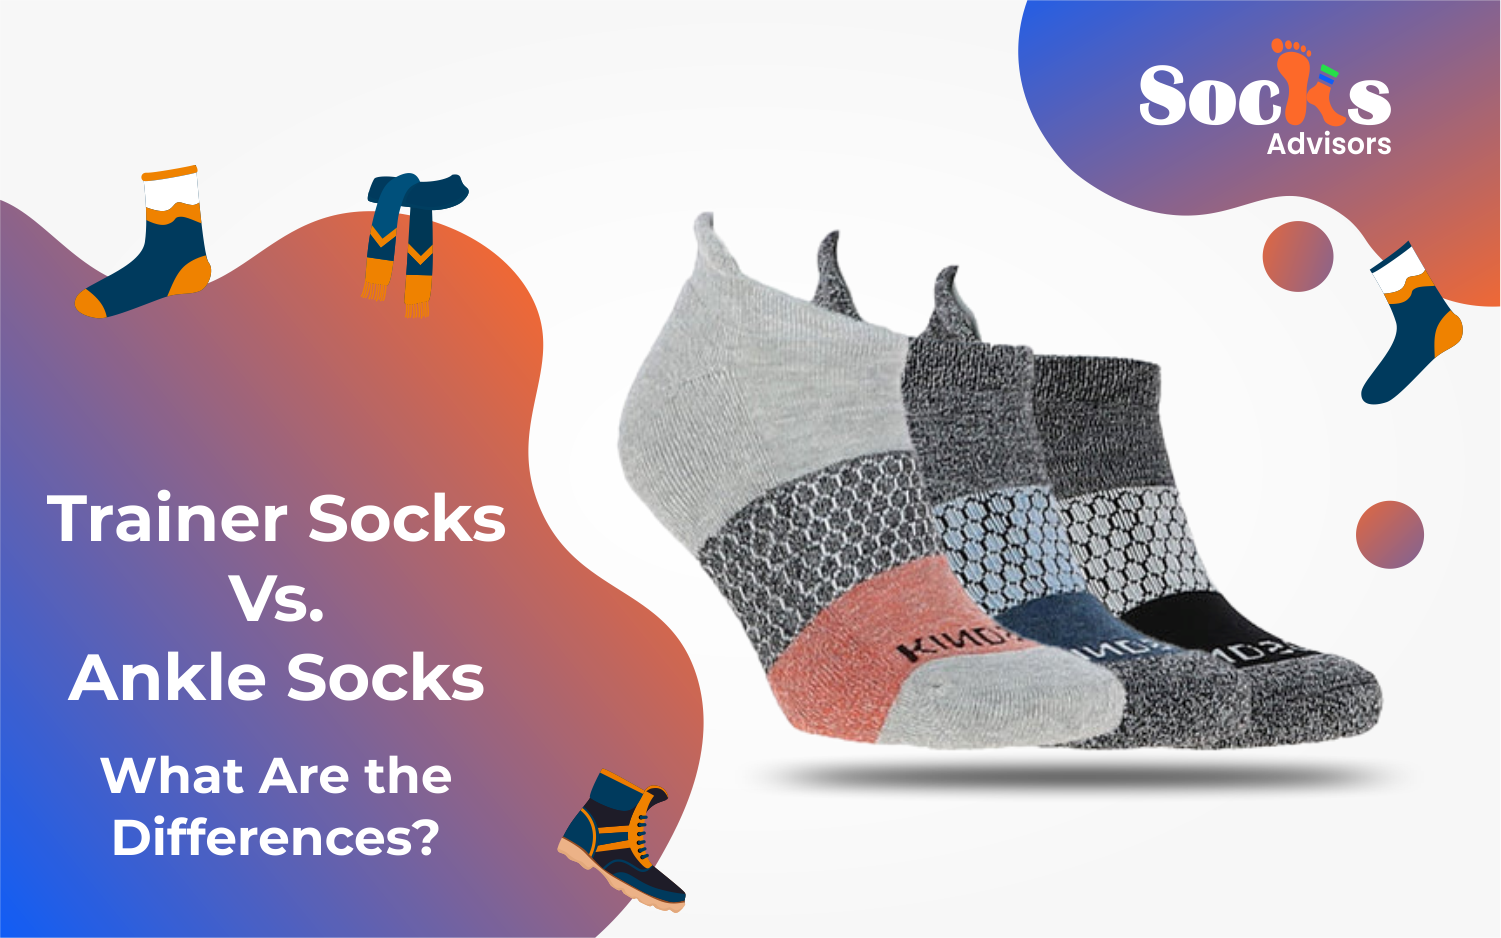 Trainer socks vs. ankle socks